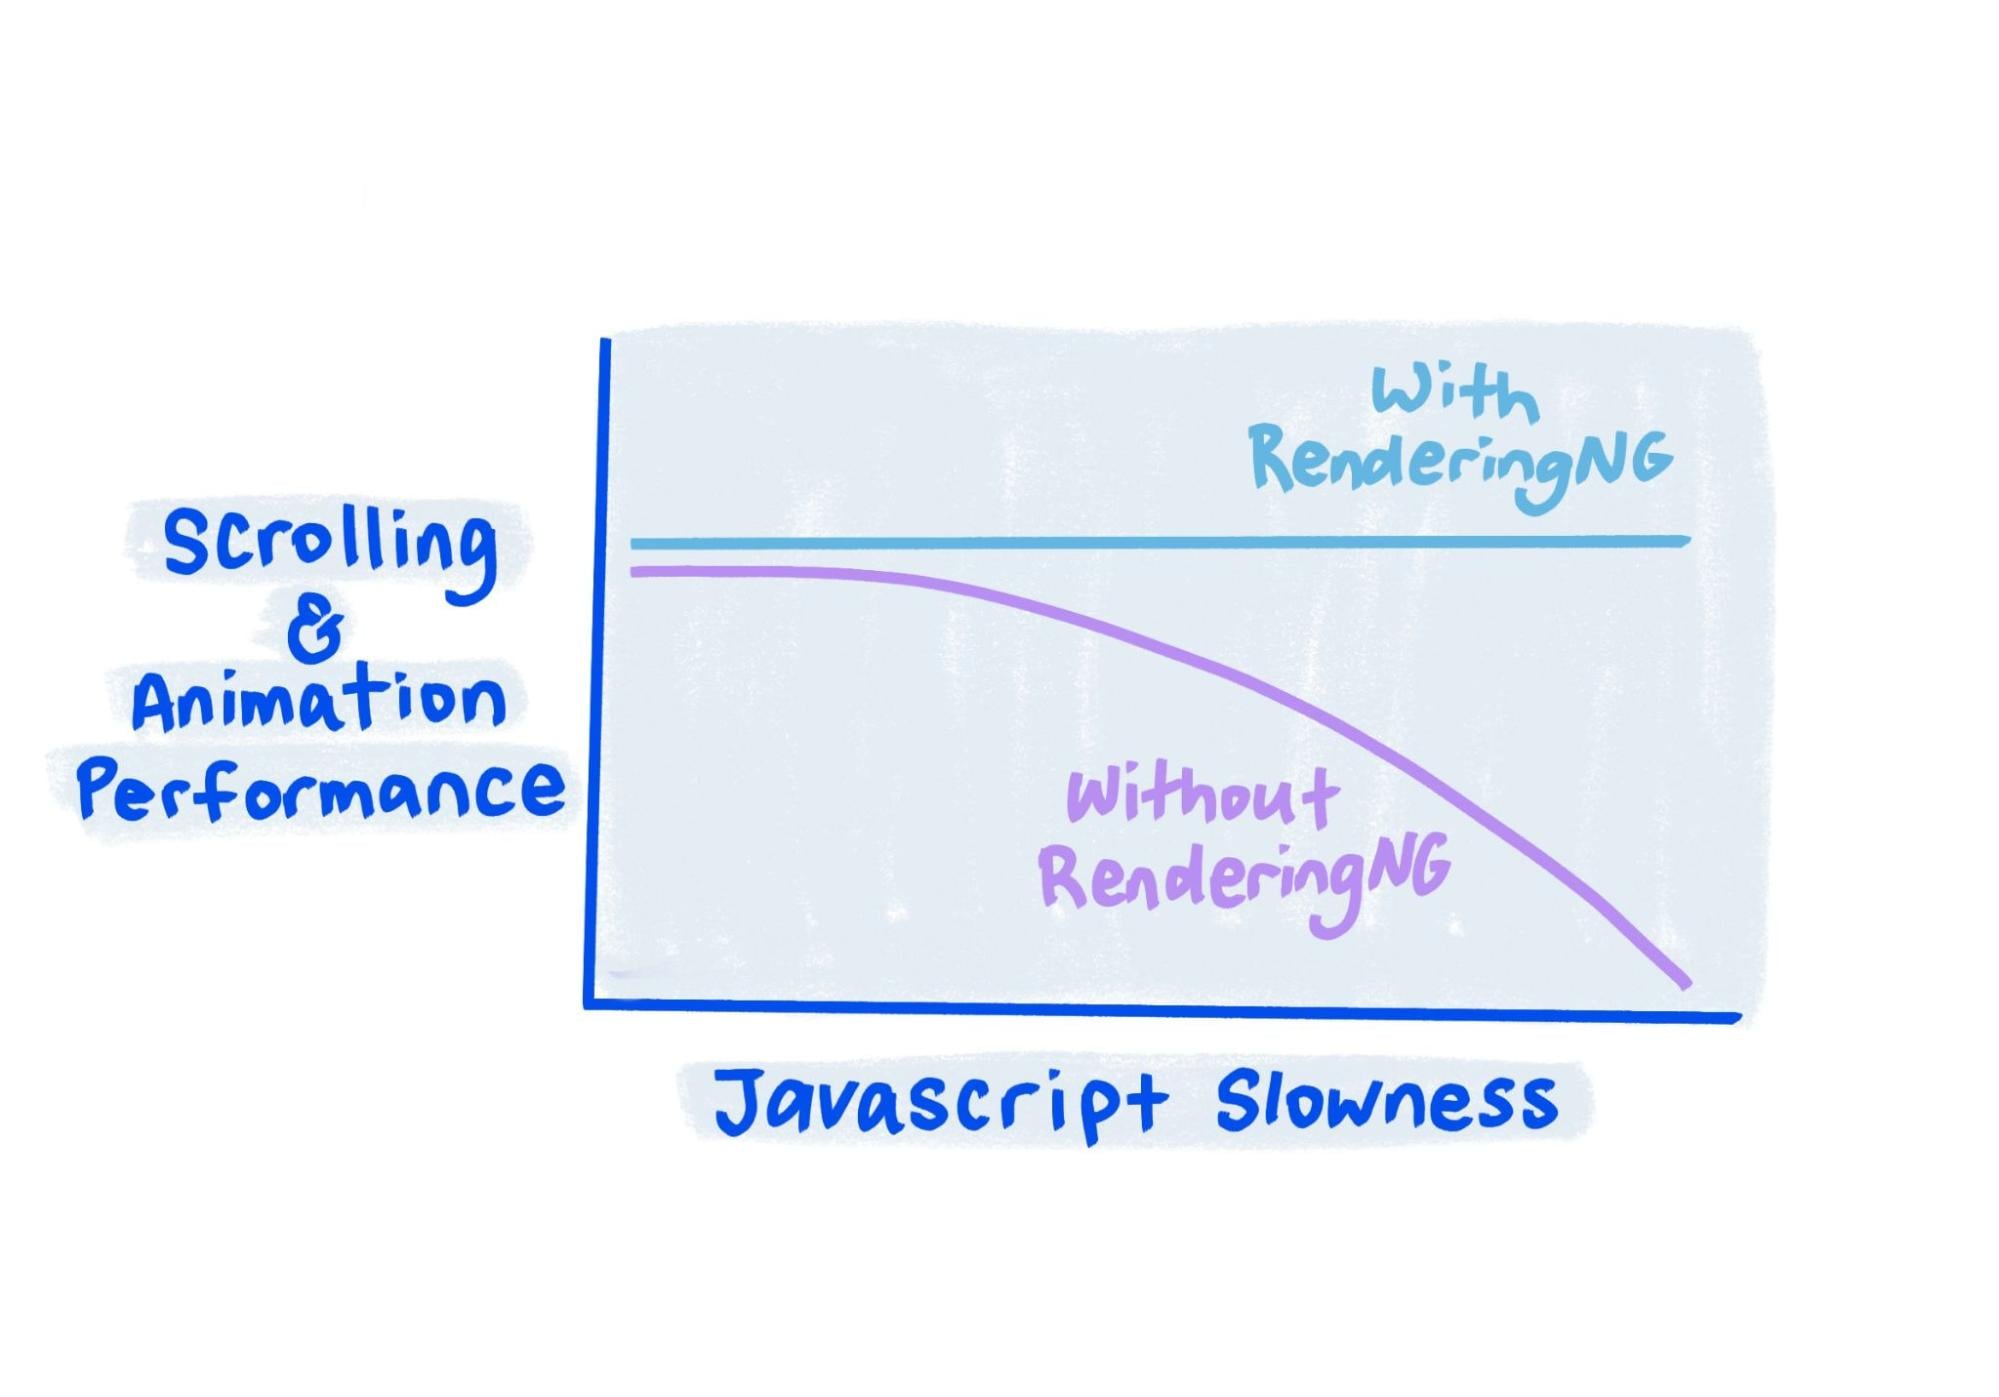 Skizze zeigt, dass beim RenderingNG die Leistung auch bei sehr langsamem JavaScript konstant bleibt.